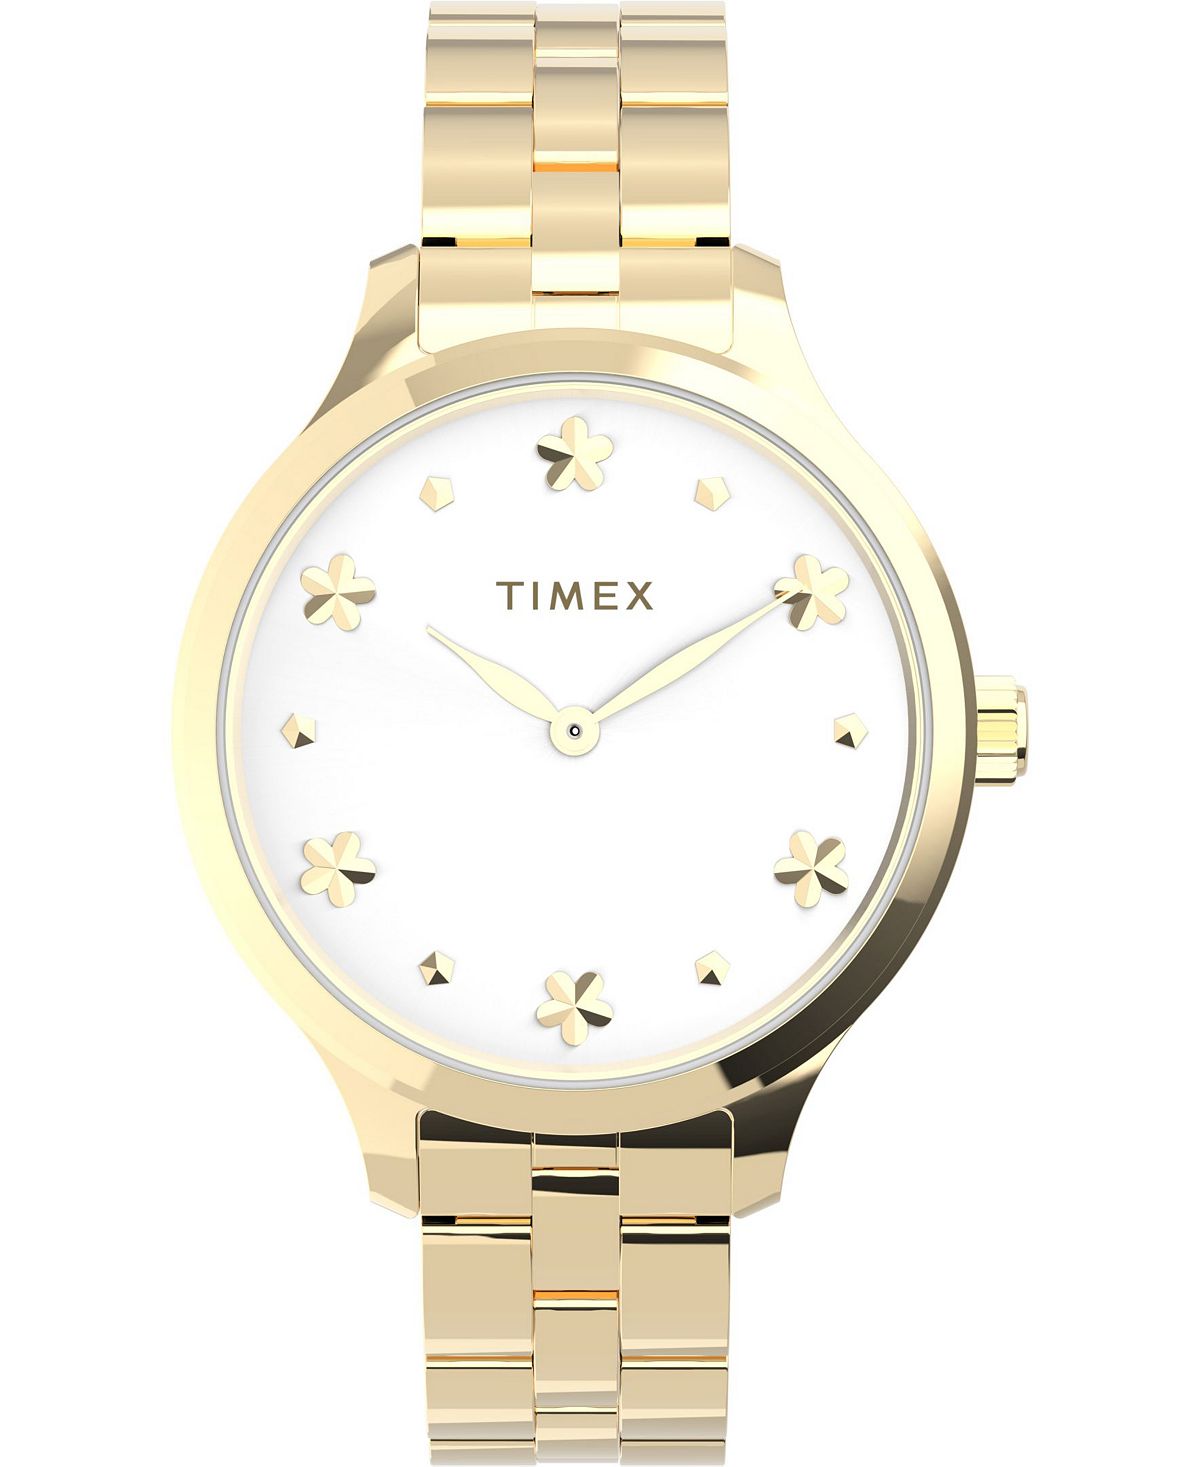 Женские часы Peyton с золотистым браслетом из нержавеющей стали, 36 мм Timex, золотой женские часы q серебристого цвета с браслетом из нержавеющей стали 36 мм timex